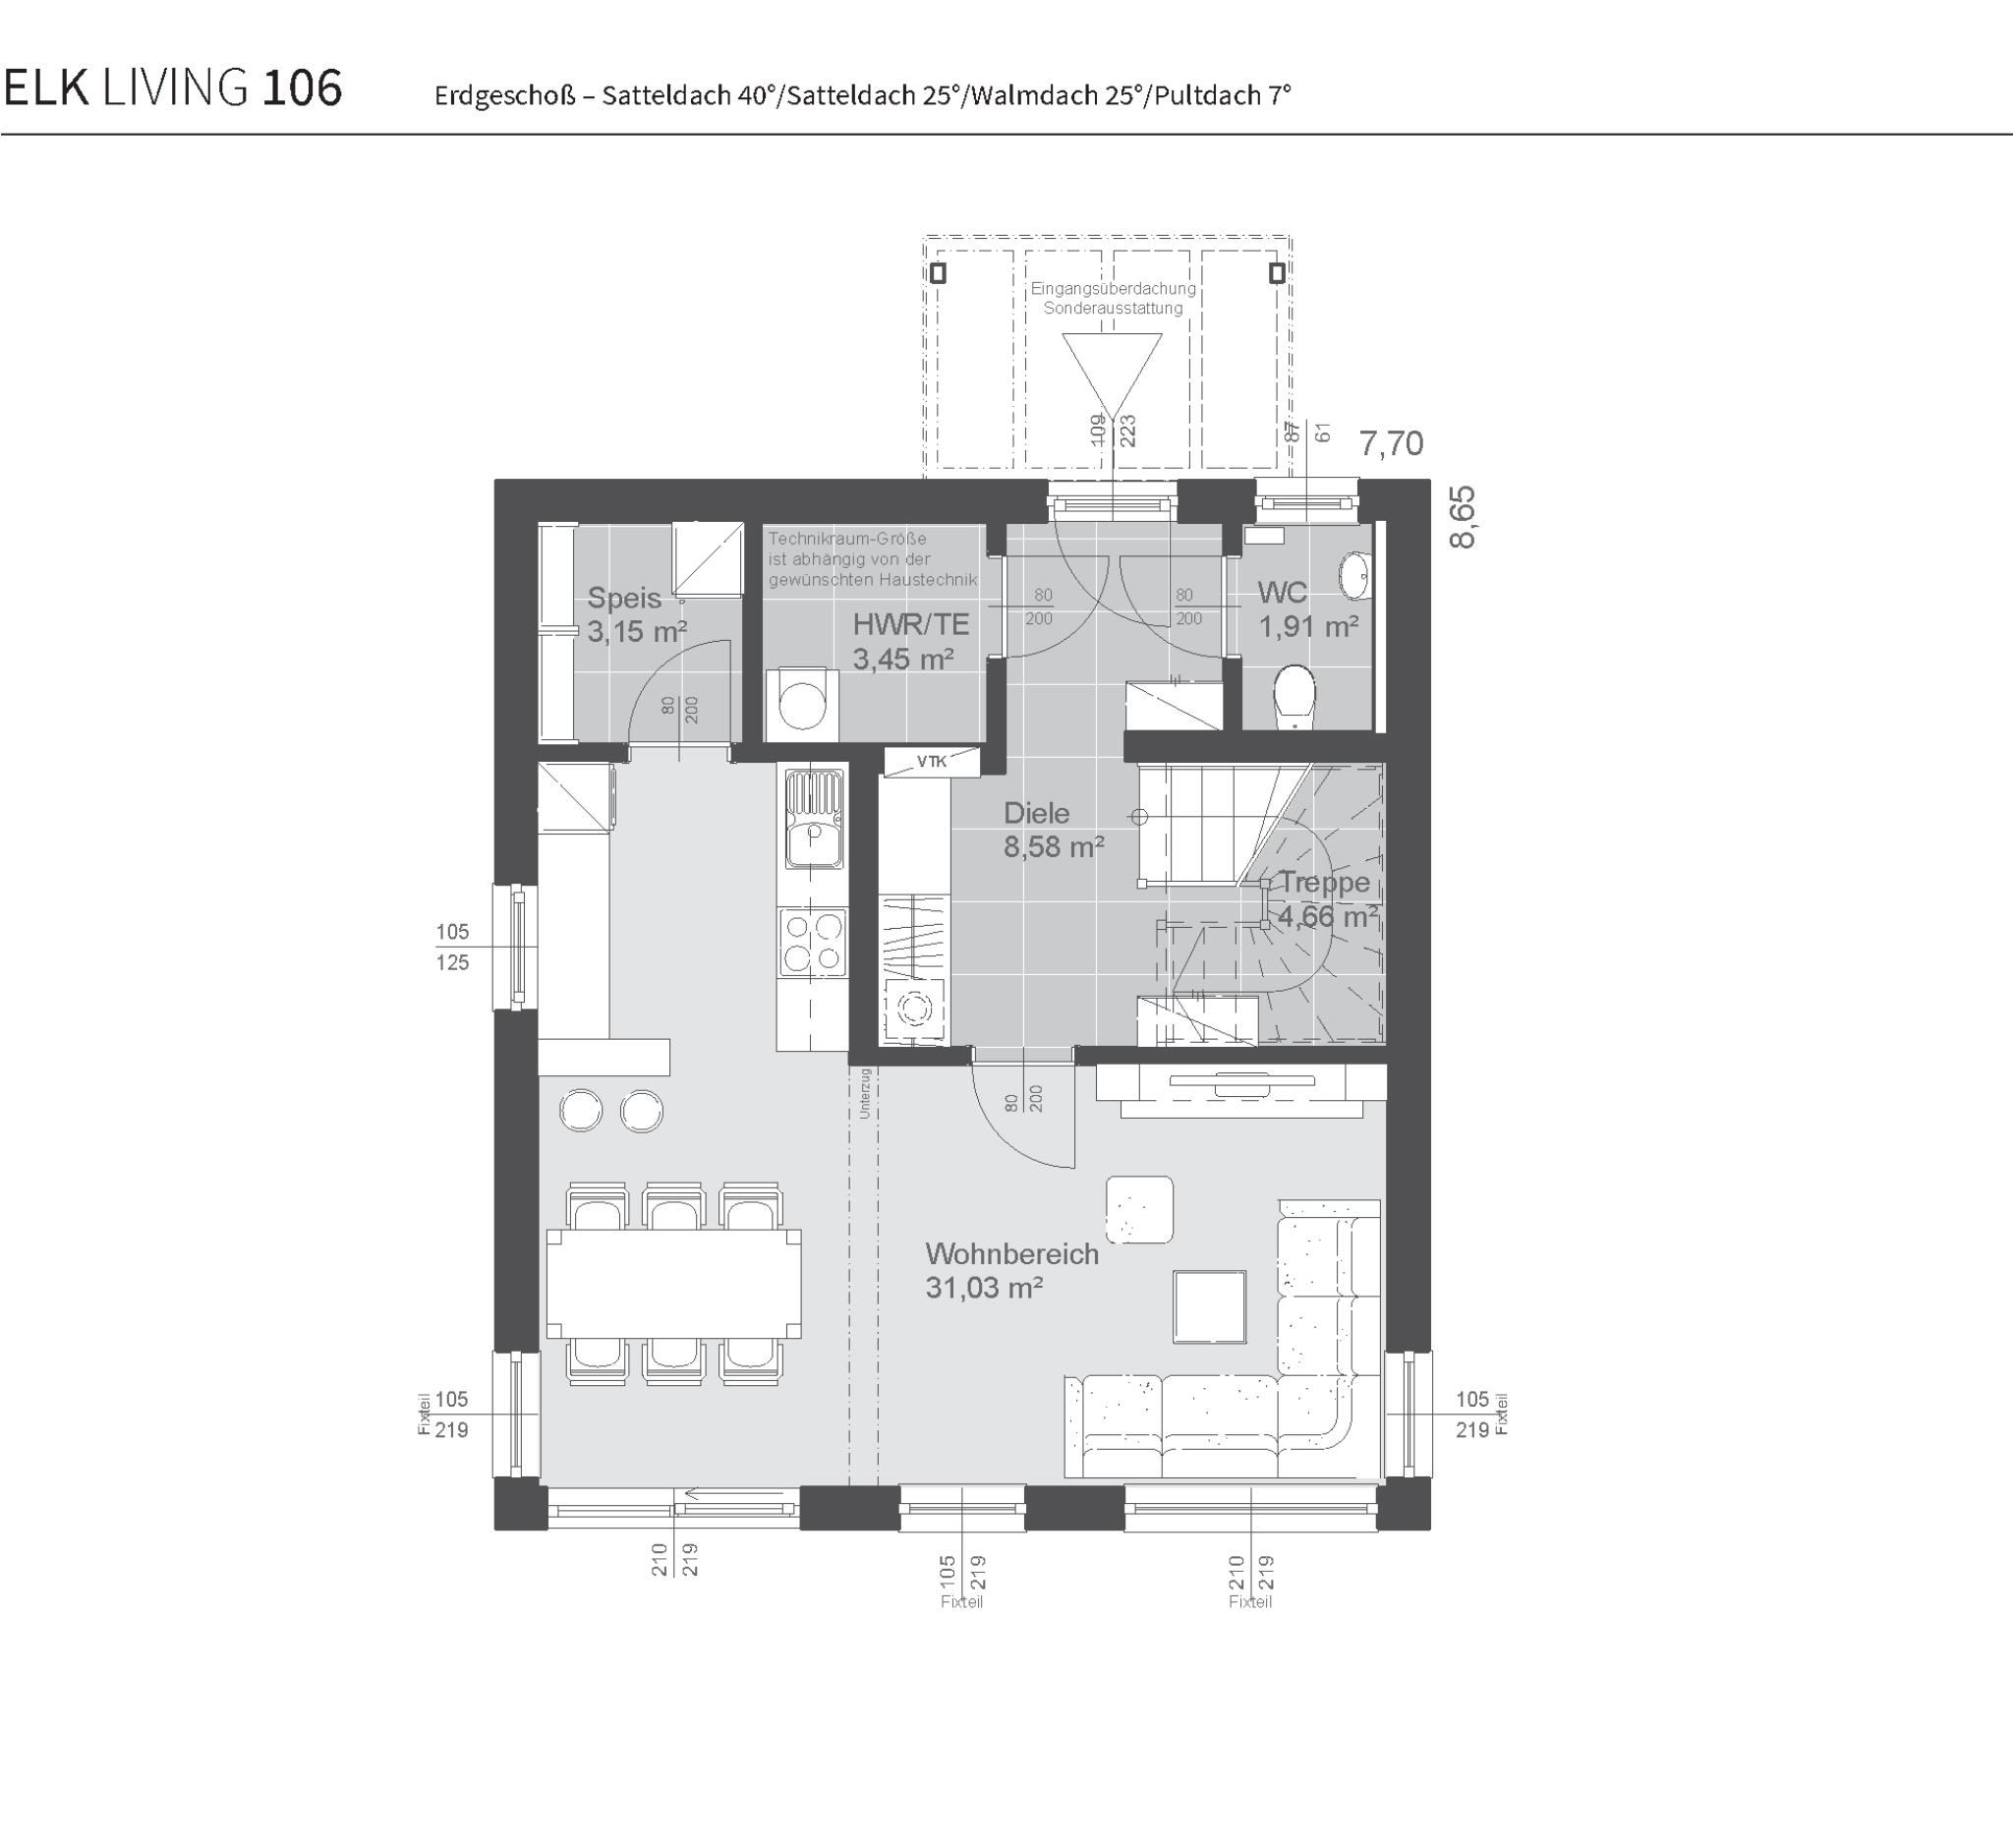 grundriss-fertighaus-elk-living-106-erdgeschoss-satteldach40-satteldach25-walmdach25-pultdach7